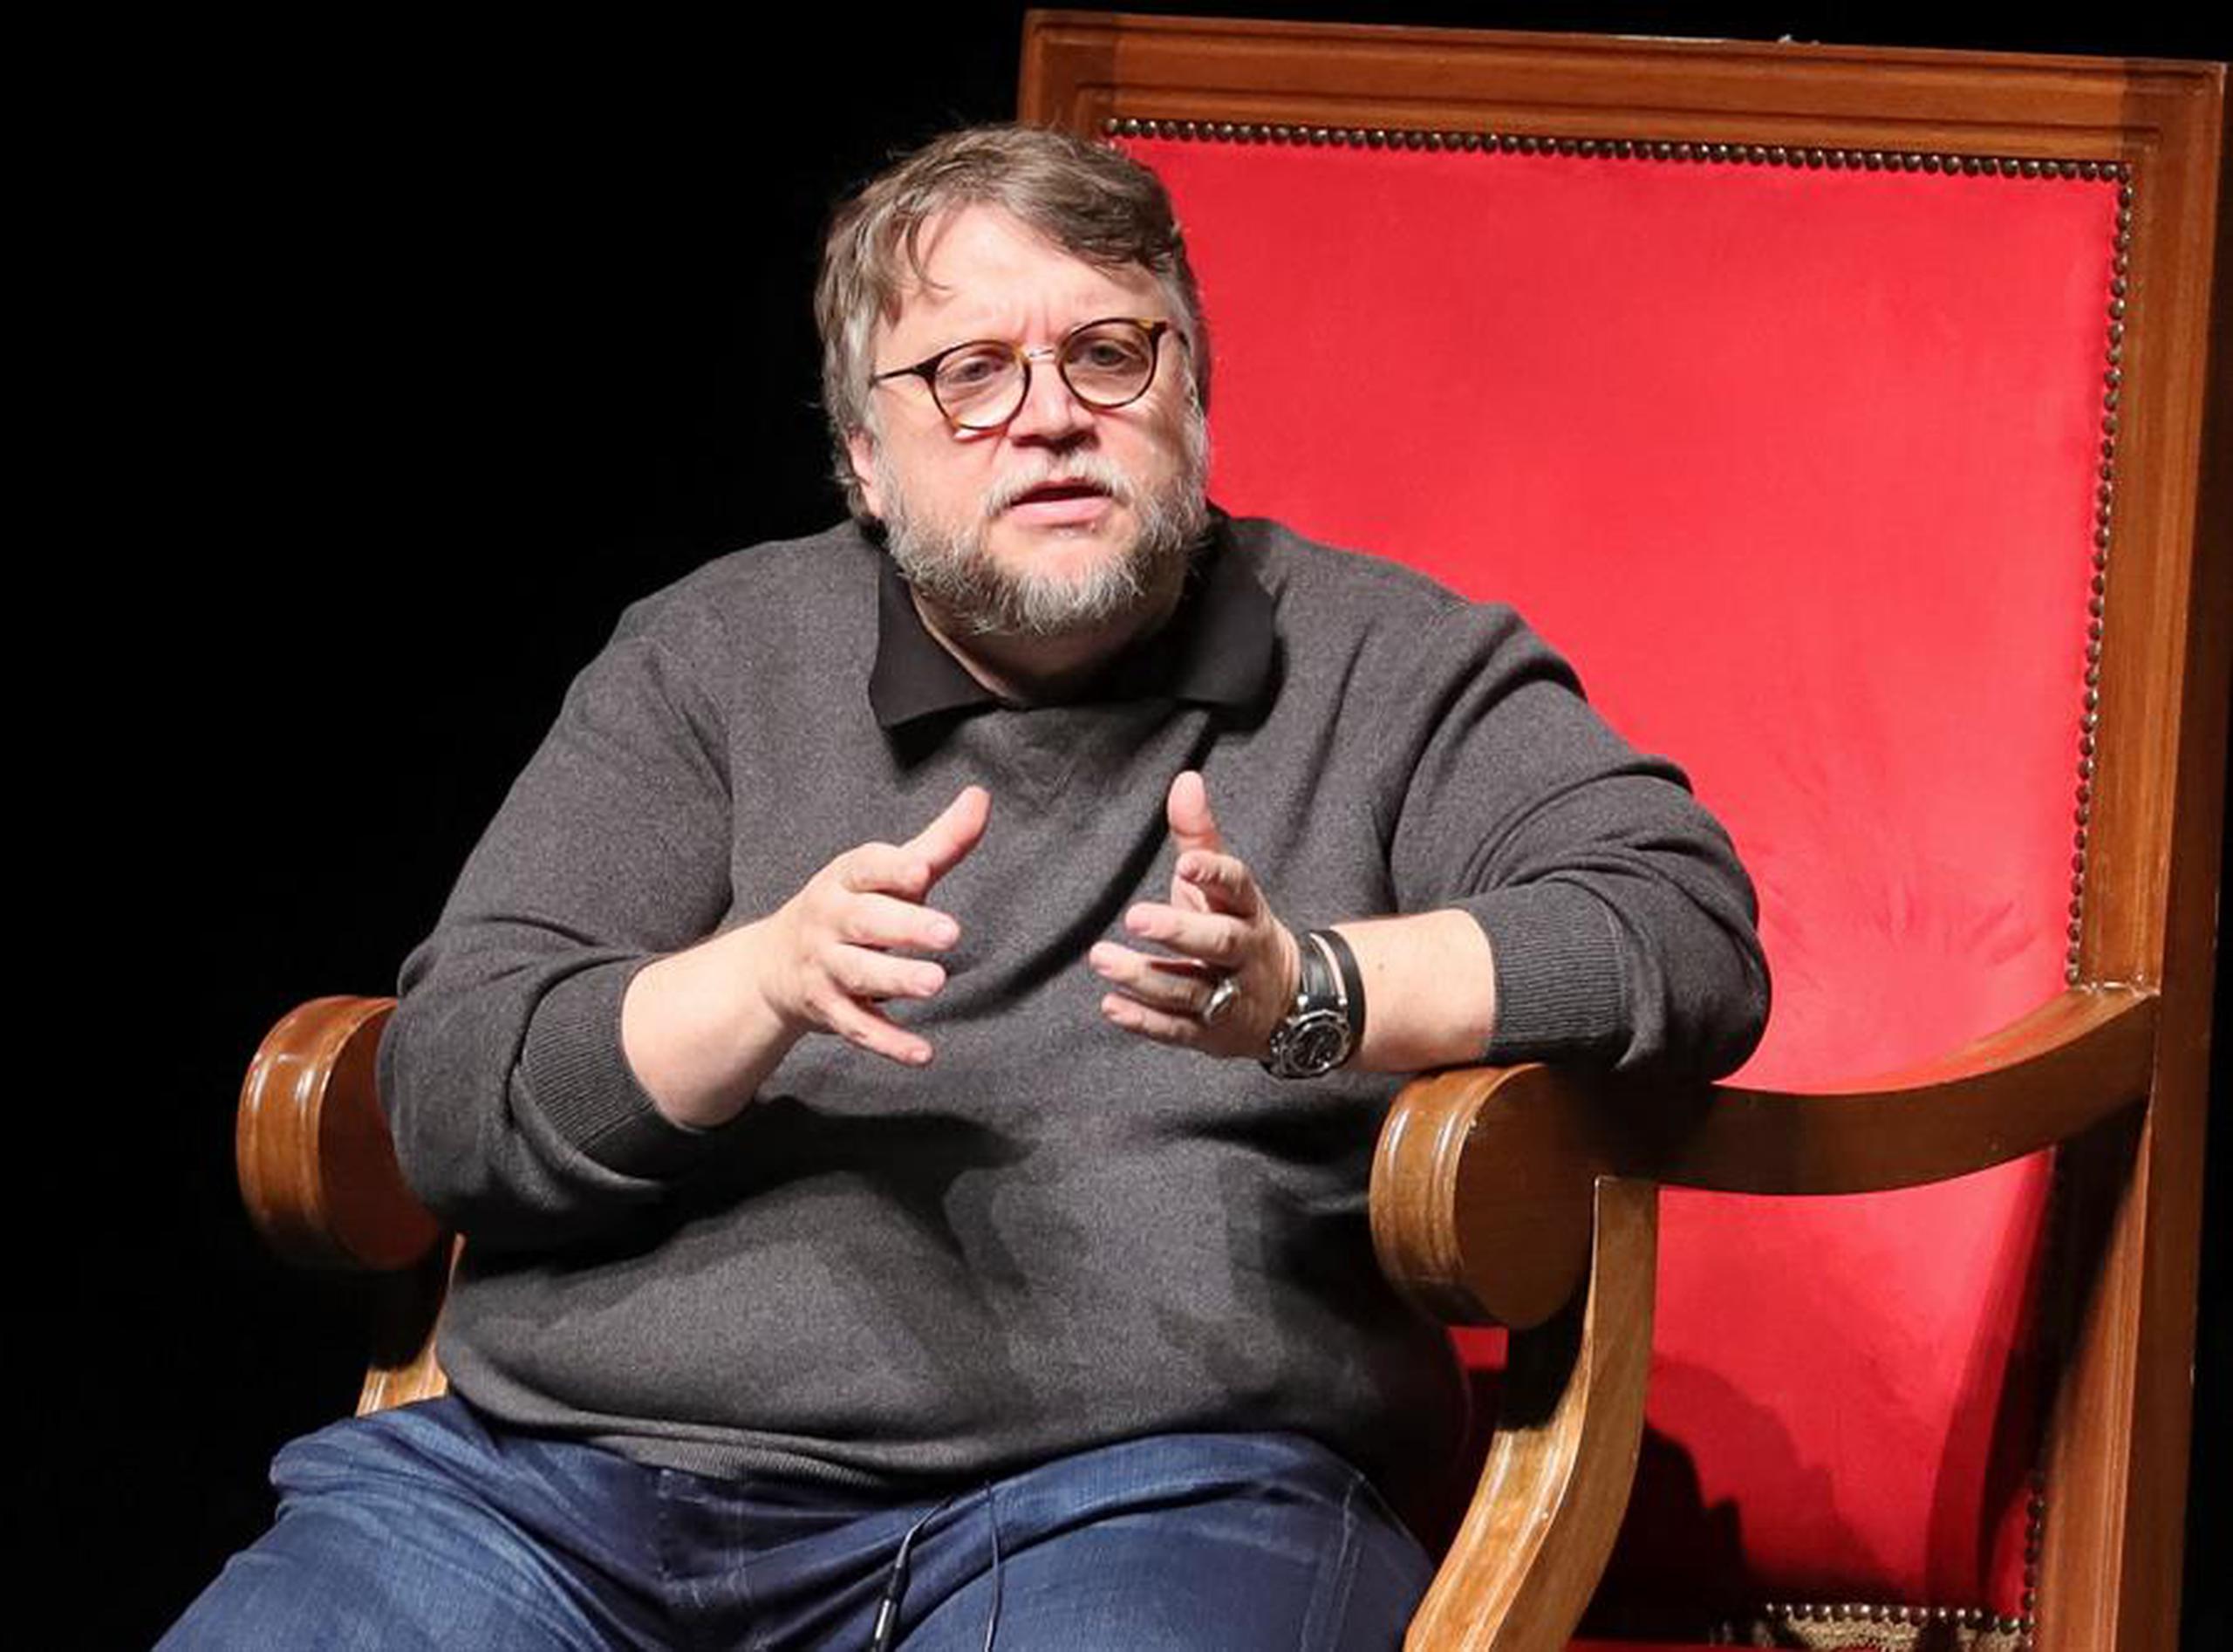 El director de cine Guillermo del Toro.